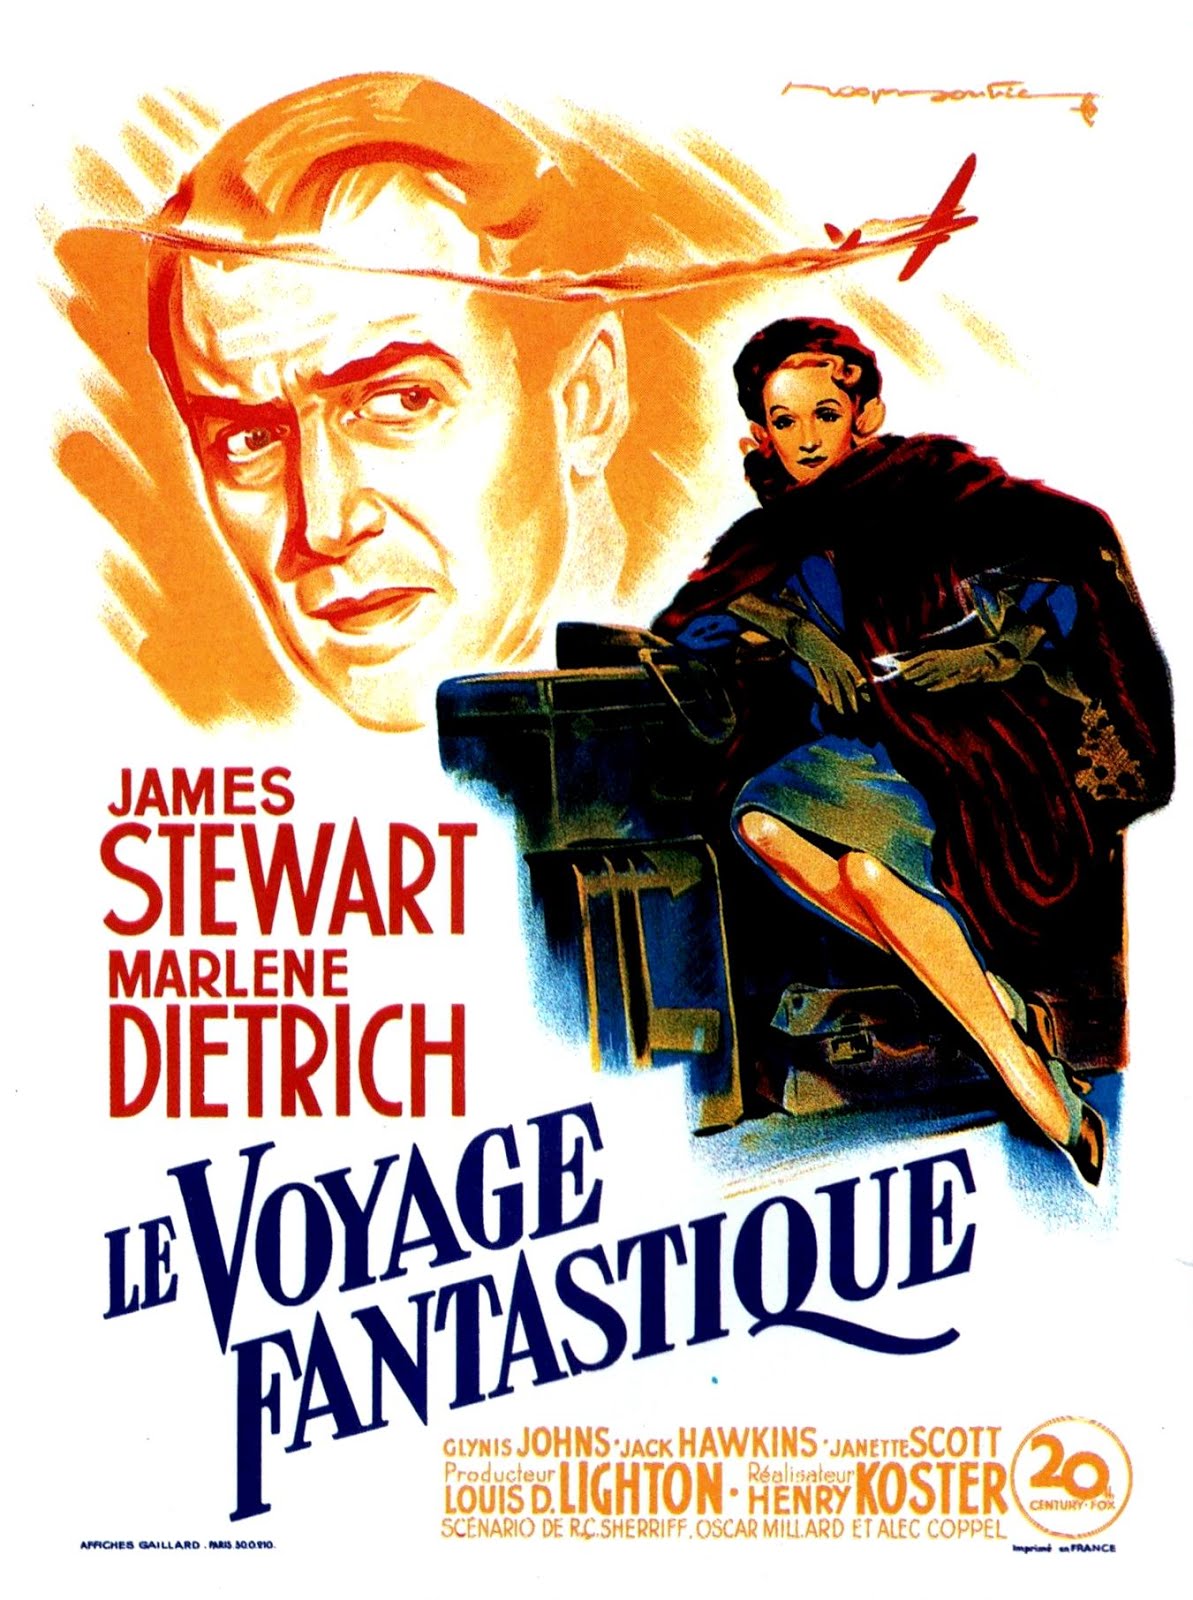 Le voyage fantastique (1950) Henry Koster - No highway in the sky (09.1950 / 1950)